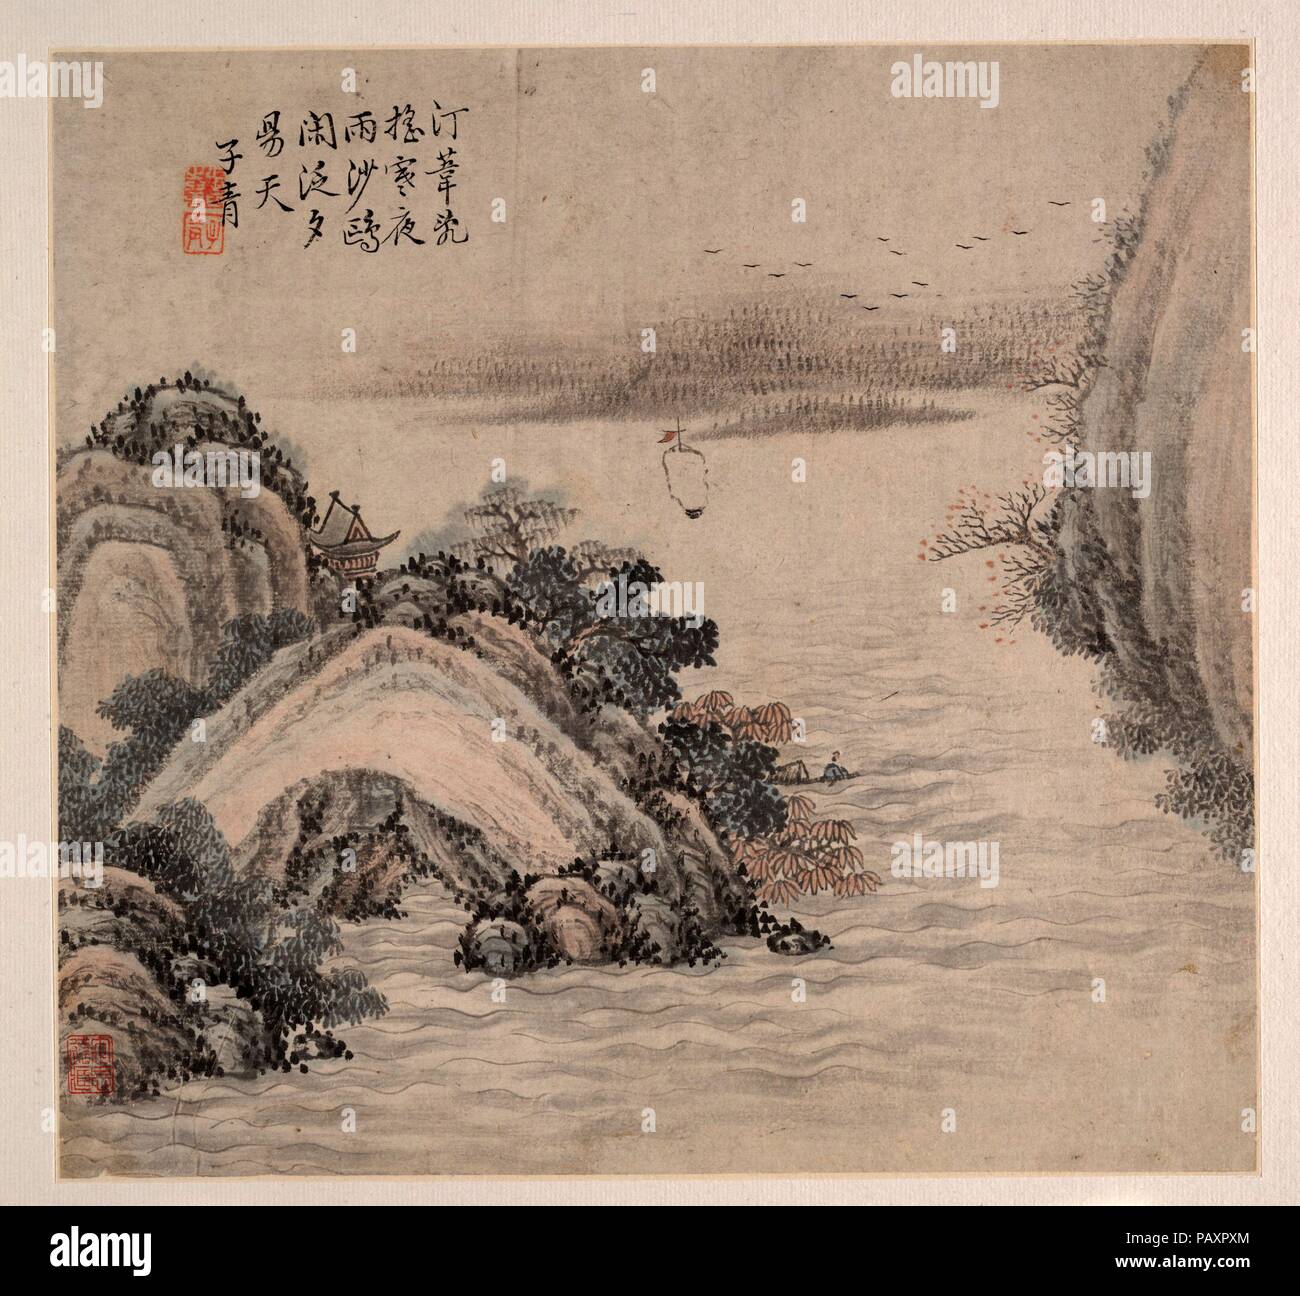 Les paysages. Artiste : Zhang Zhiwan (Chinois, 1811-1897). Culture : la Chine. Dimensions : 9 x 9 5/16 13/16 in. (23,7 x 24,9 cm). Date : du 1875. Musée : Metropolitan Museum of Art, New York, USA. Banque D'Images